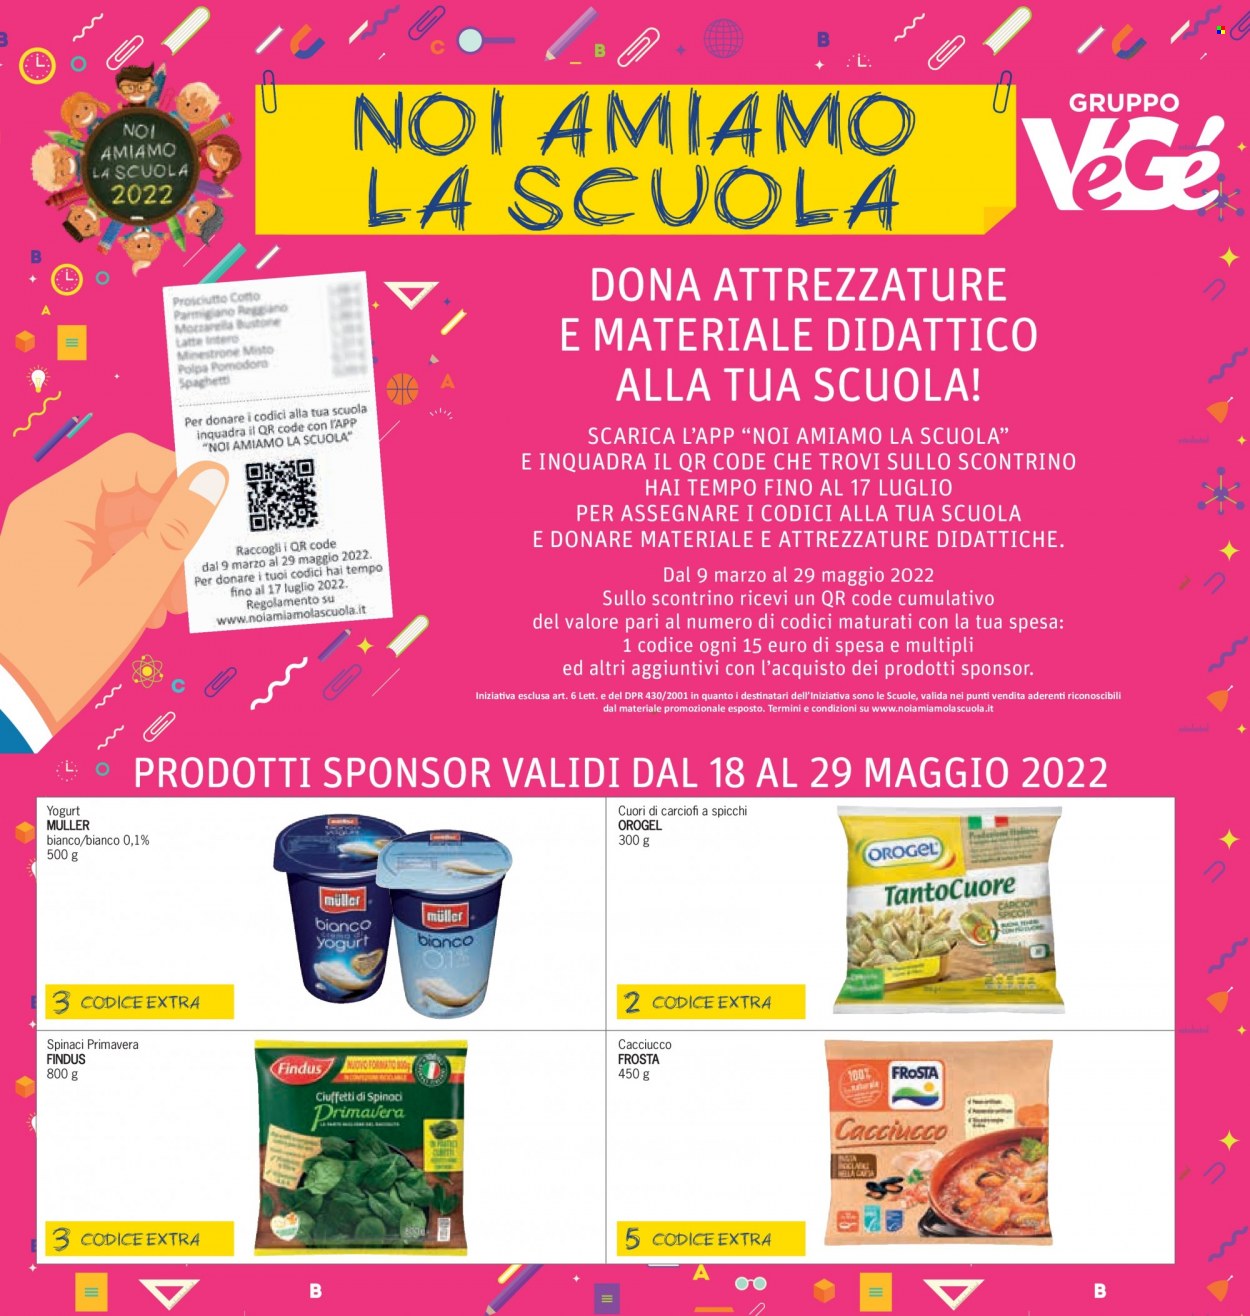 thumbnail - Volantino Futura - 19/5/2022 - 1/6/2022 - Prodotti in offerta - spinaci, Findus, Frosta, cacciucco, yogurt, Müller, Orogel. Pagina 21.